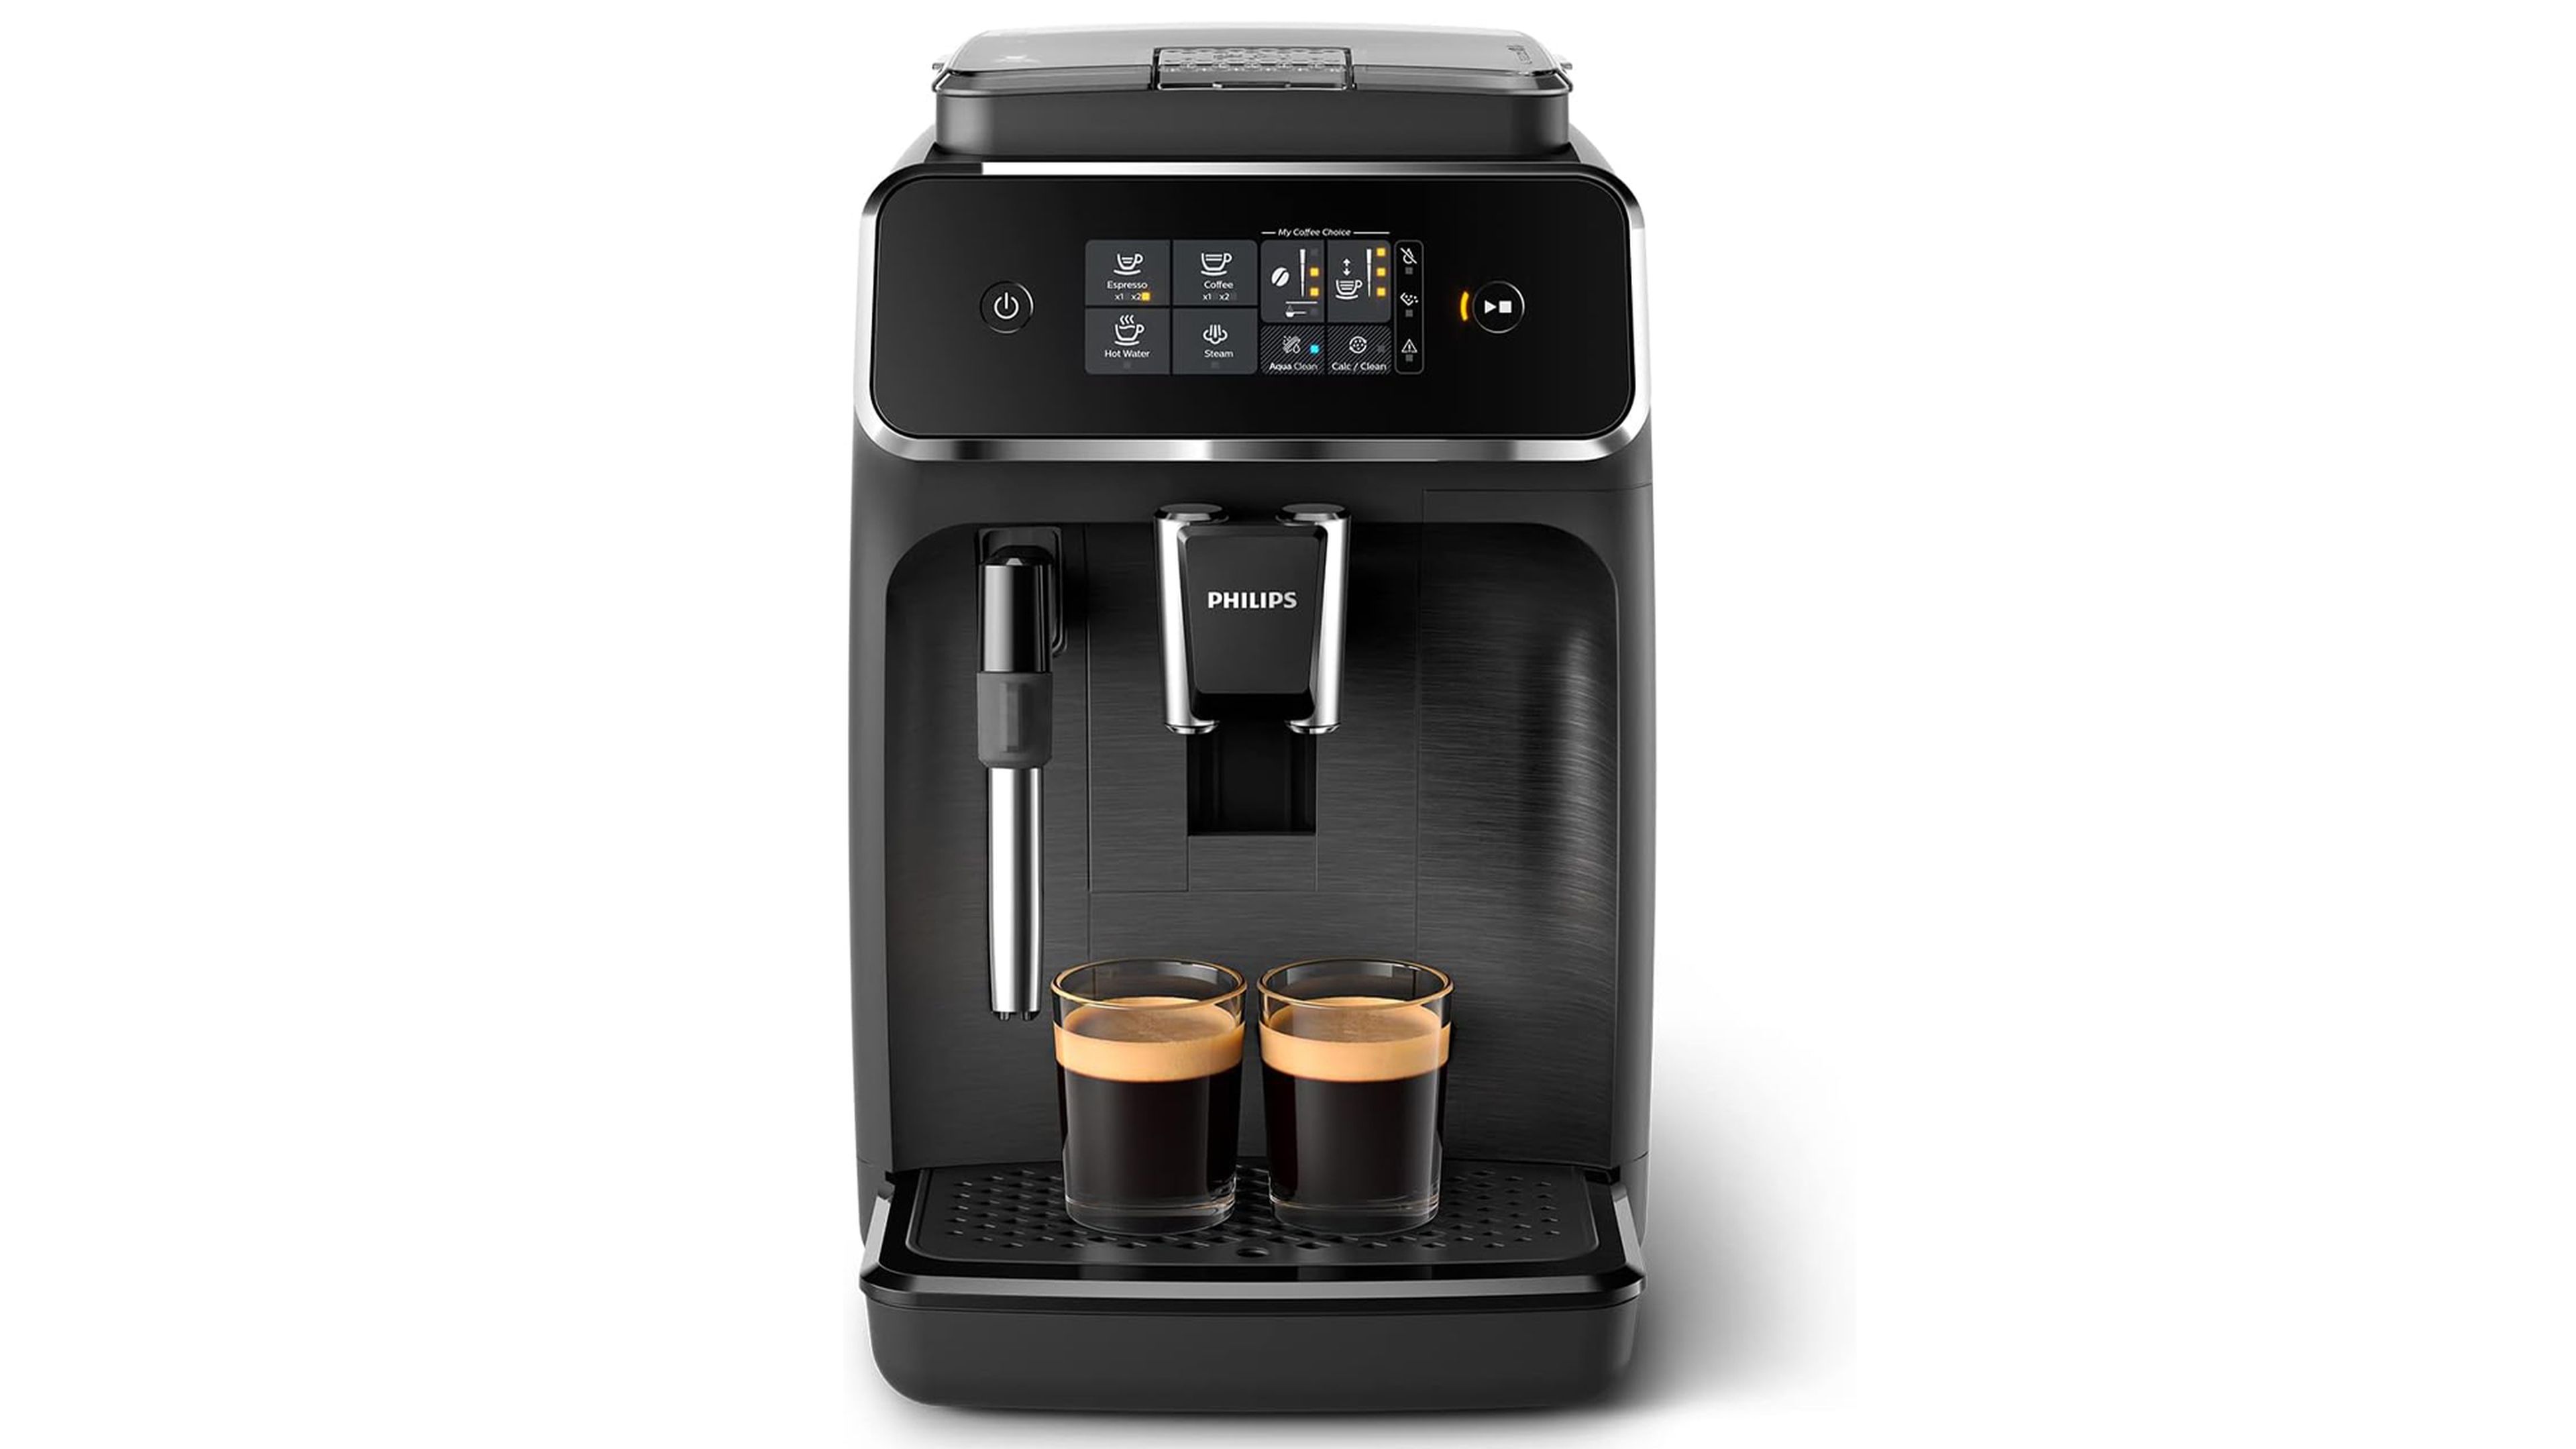 Más de 70 euros de descuento en esta cafetera superautomática Philips:  podrás obtener espressos como los de un barista